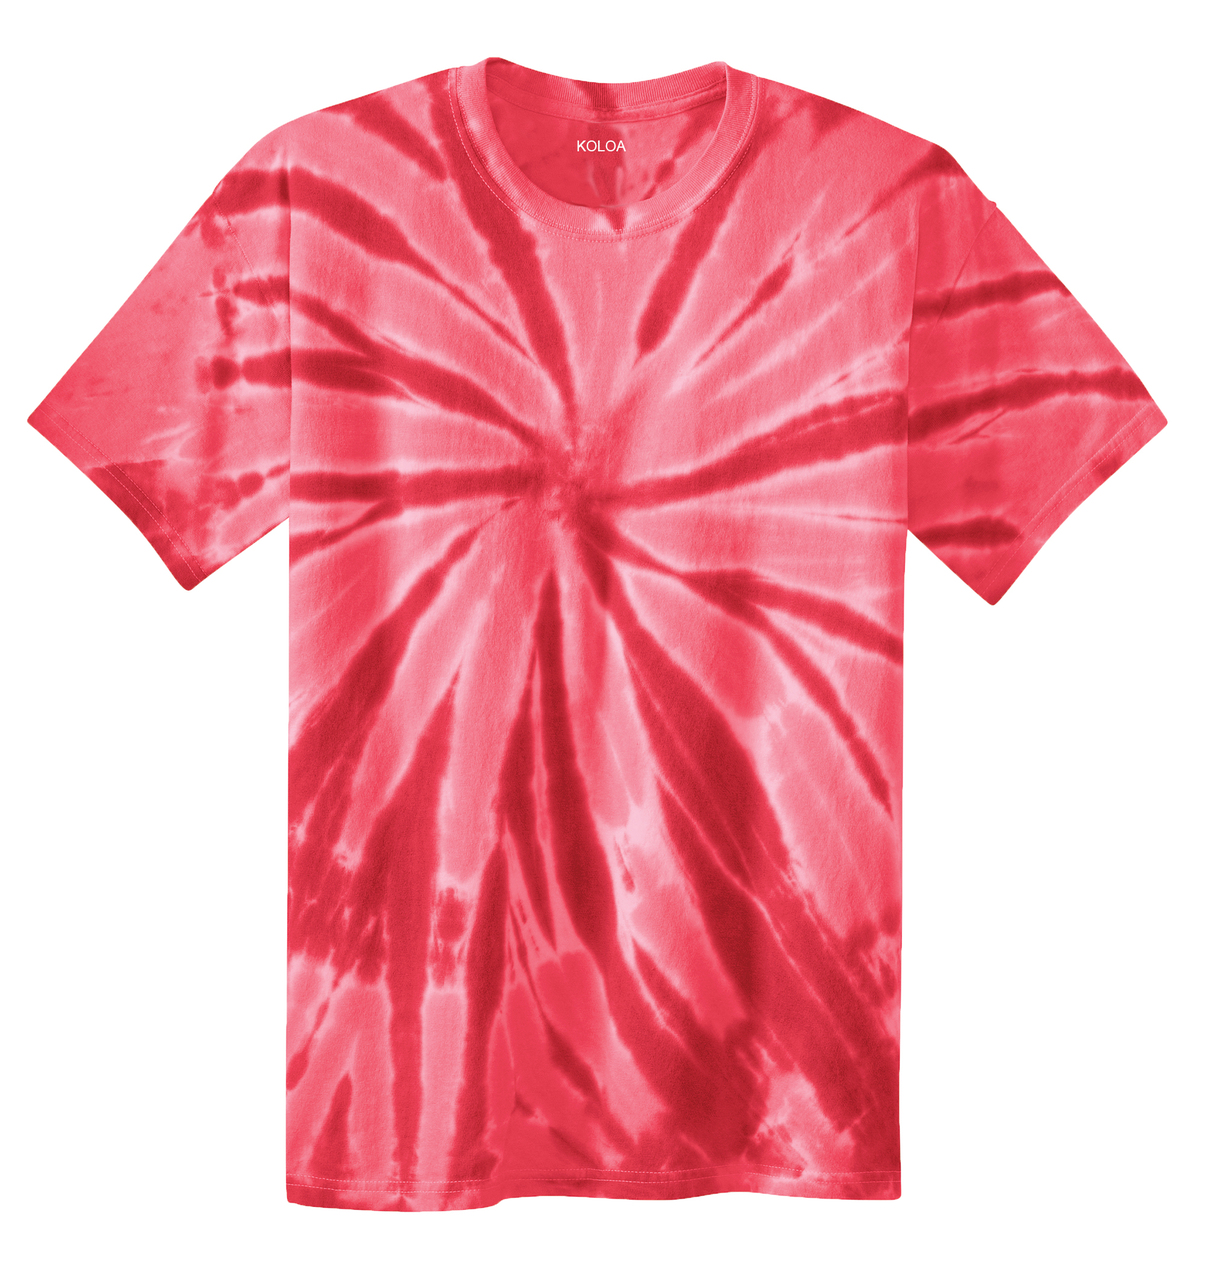 Pink Tie Dye T-Shirt